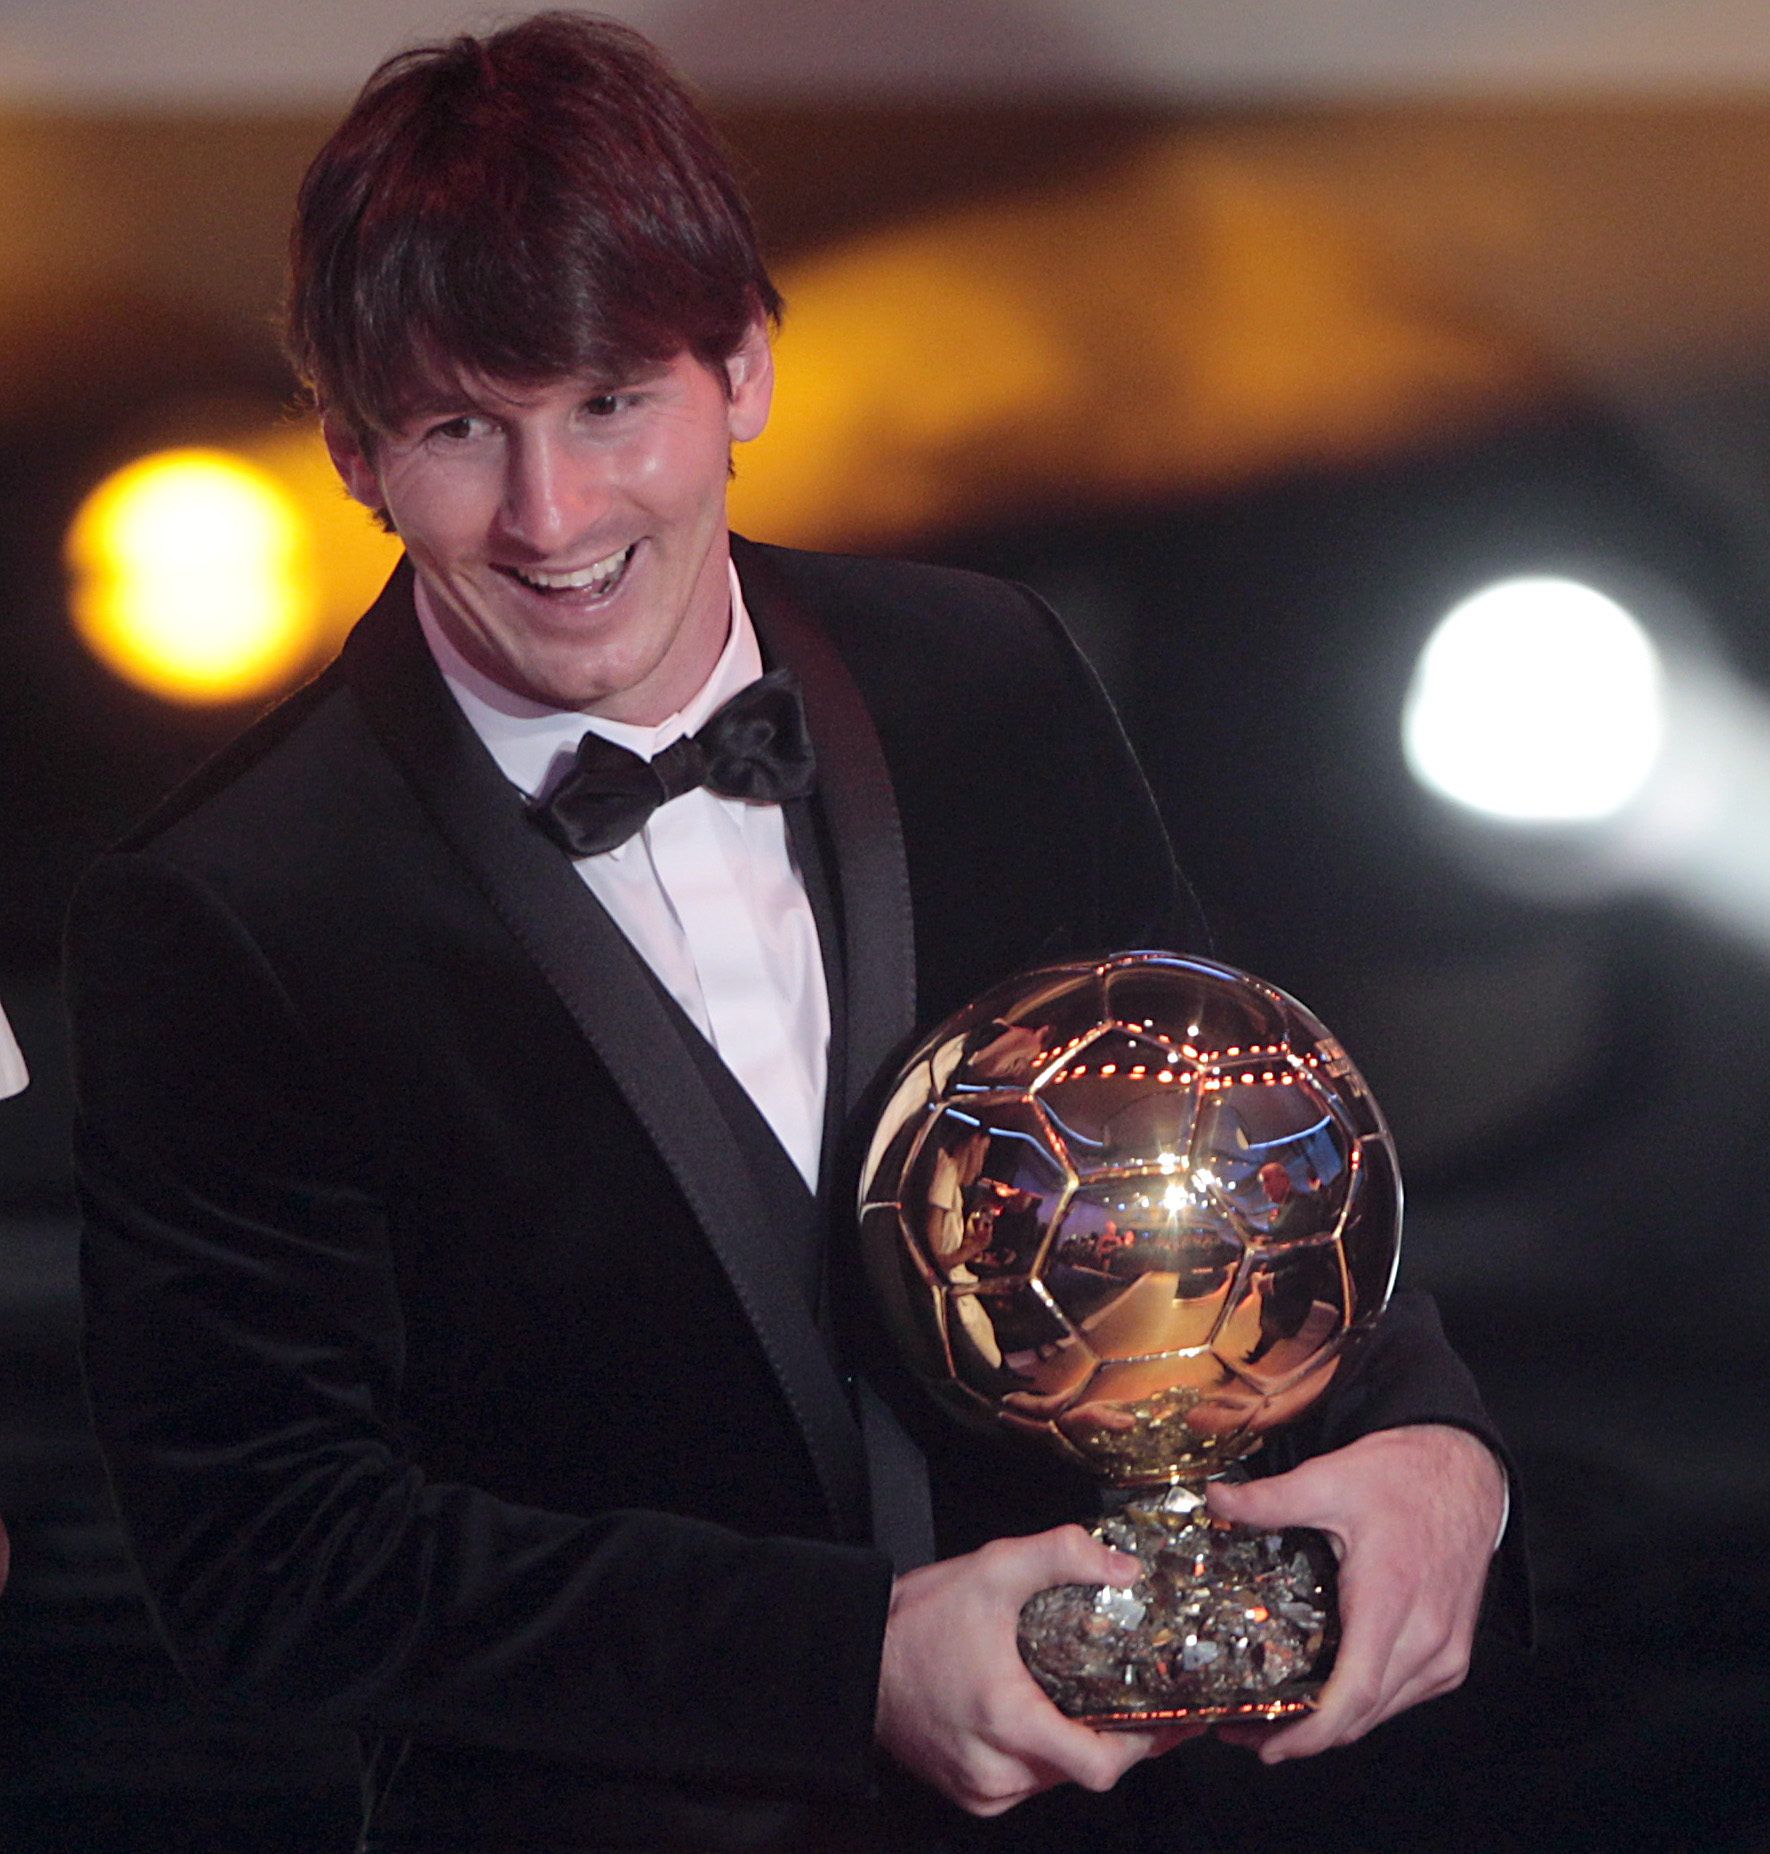 Messi Wins FIFA’s Ballon d’Or Award